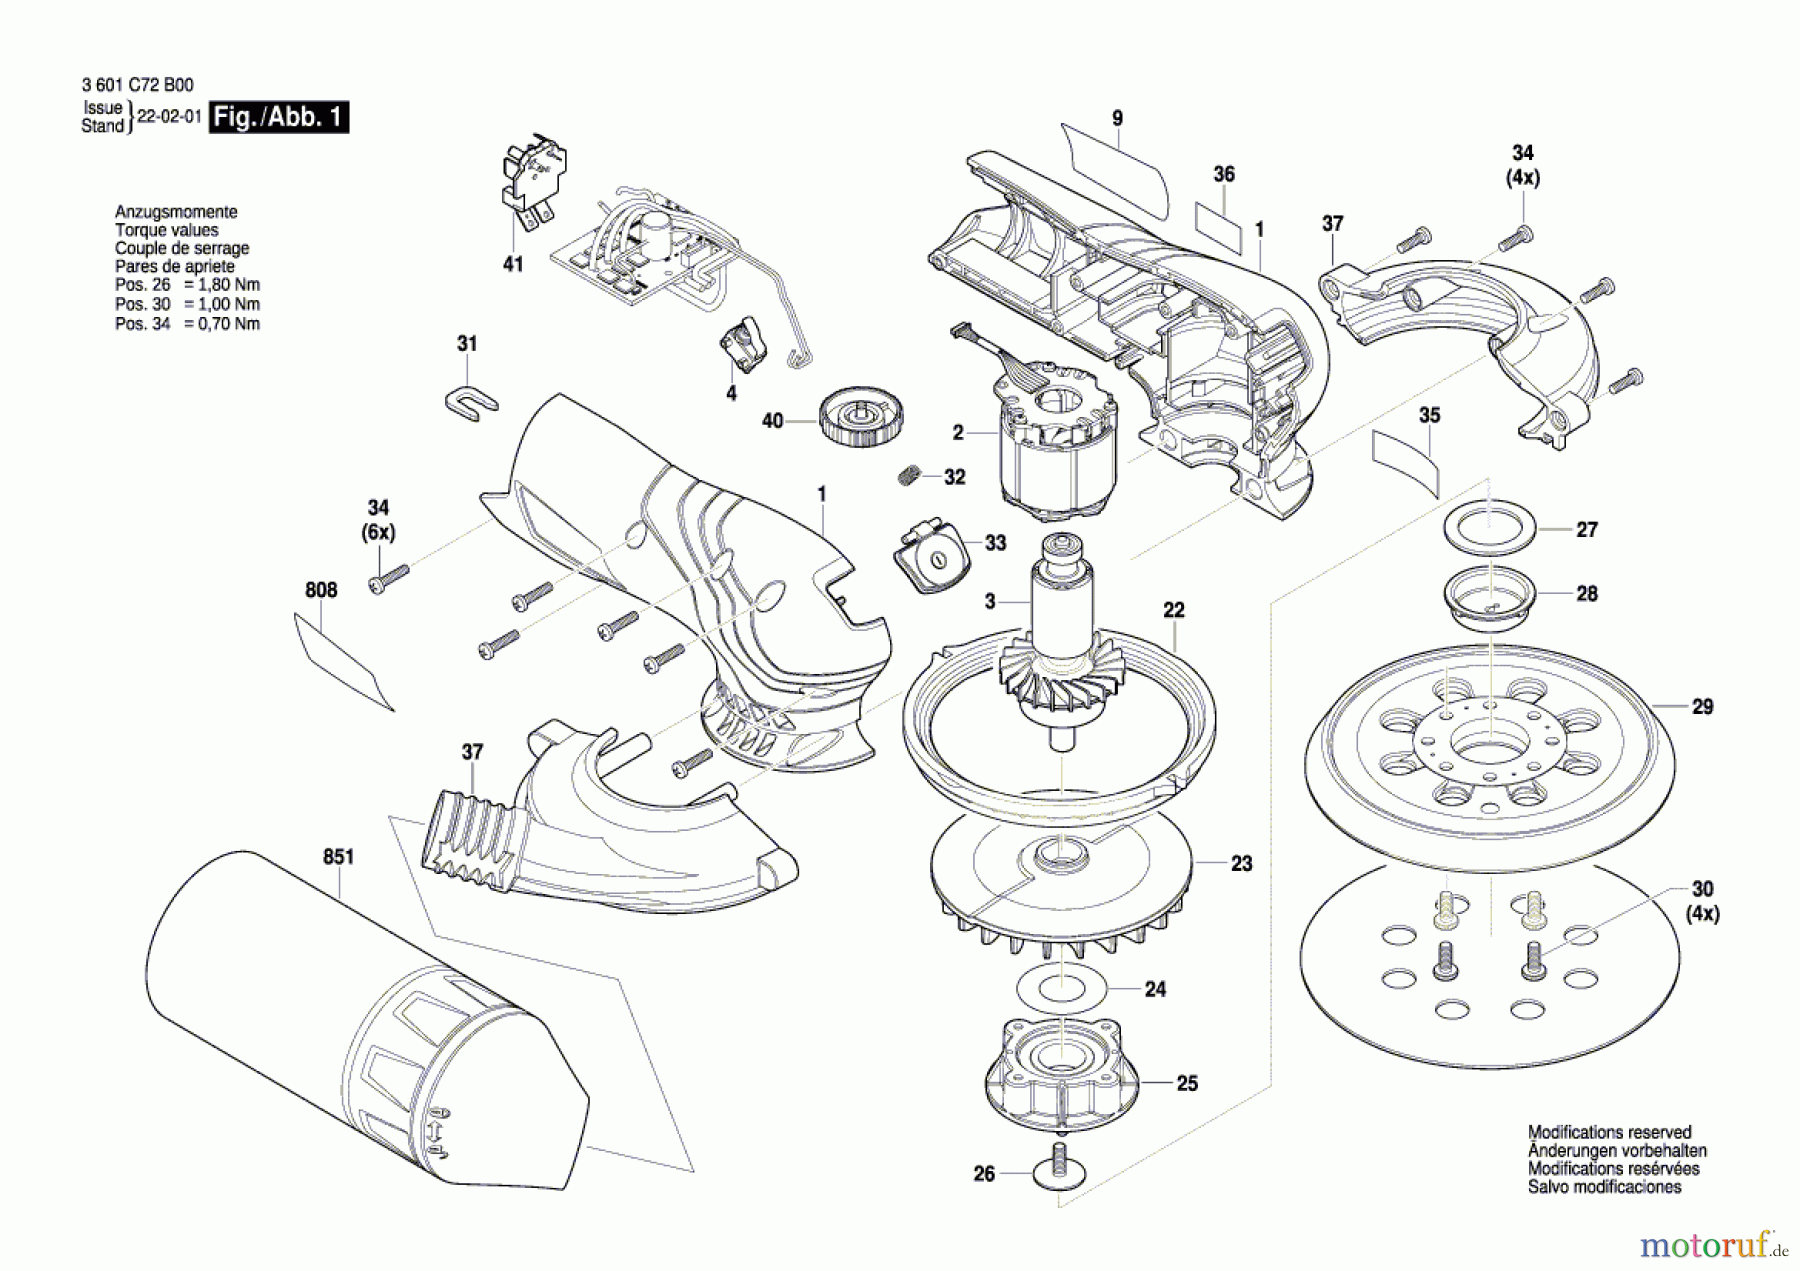  Bosch Werkzeug Exzenterschleifer BACROS BL 12V Seite 1